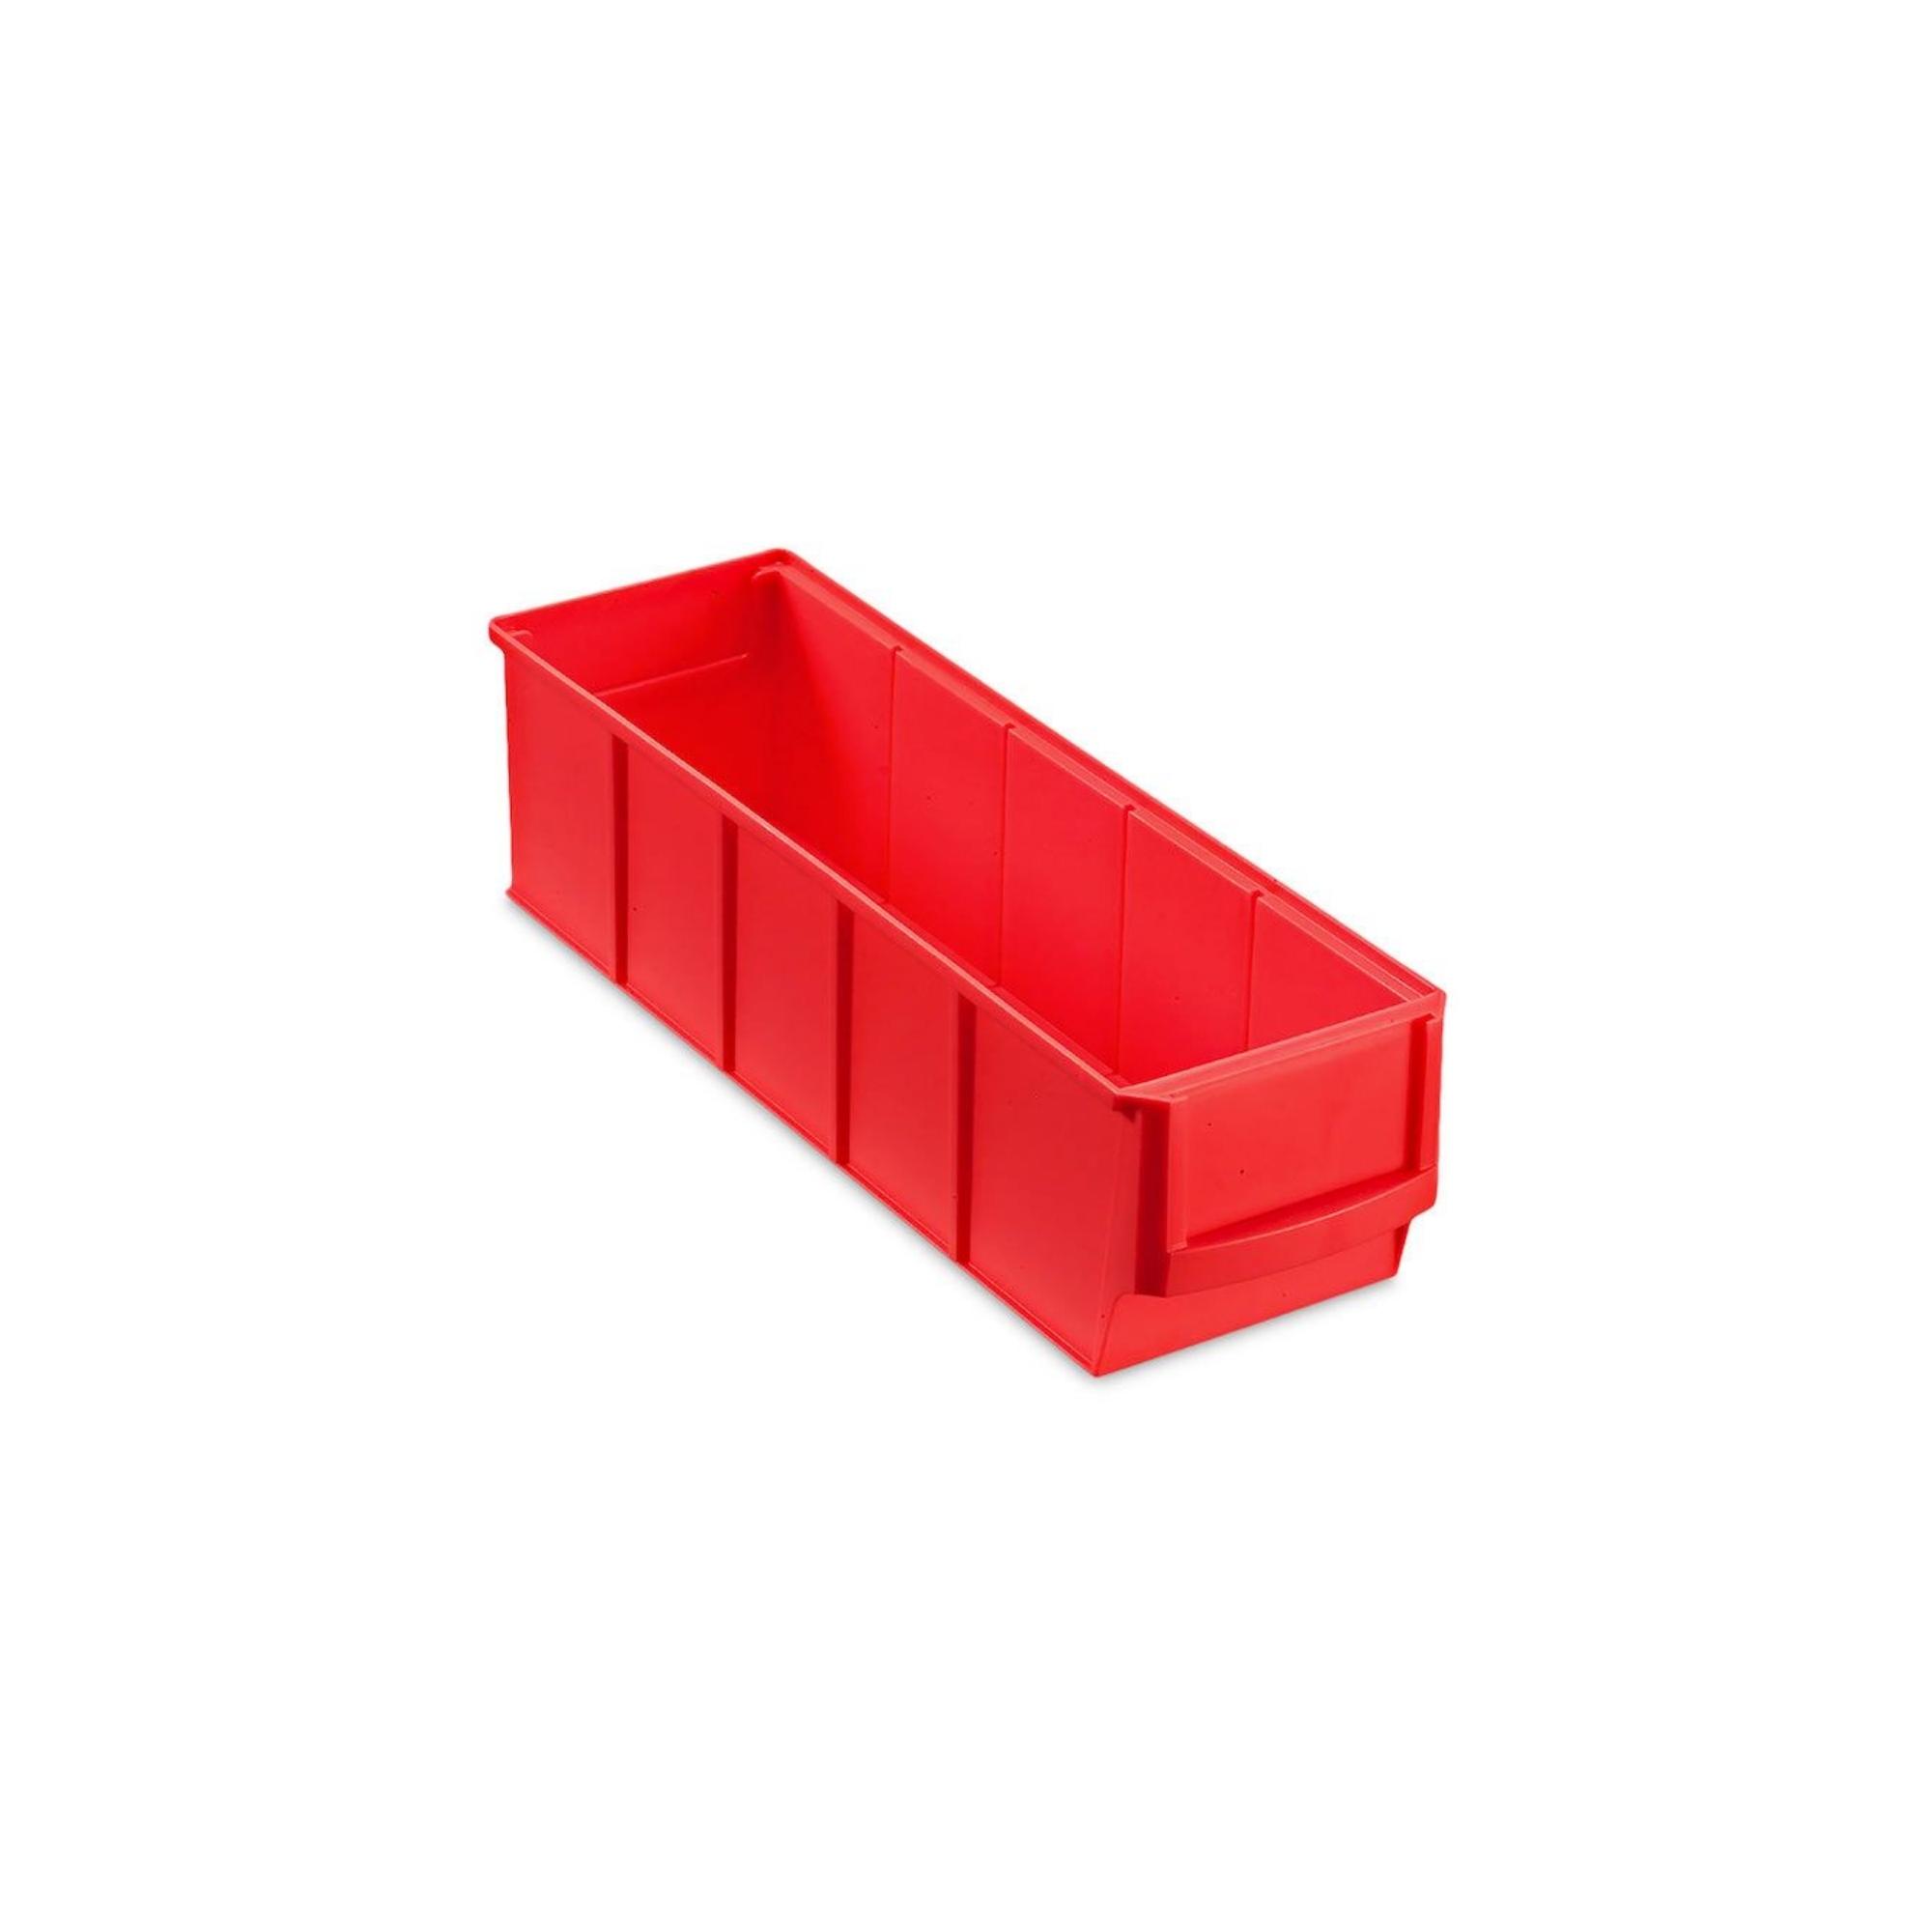 Rote Industriebox 300 S | HxBxT 8,1x9,1x30cm | 1,6 Liter| Sichtlagerkasten, Sortimentskasten, Sortimentsbox, Kleinteilebox